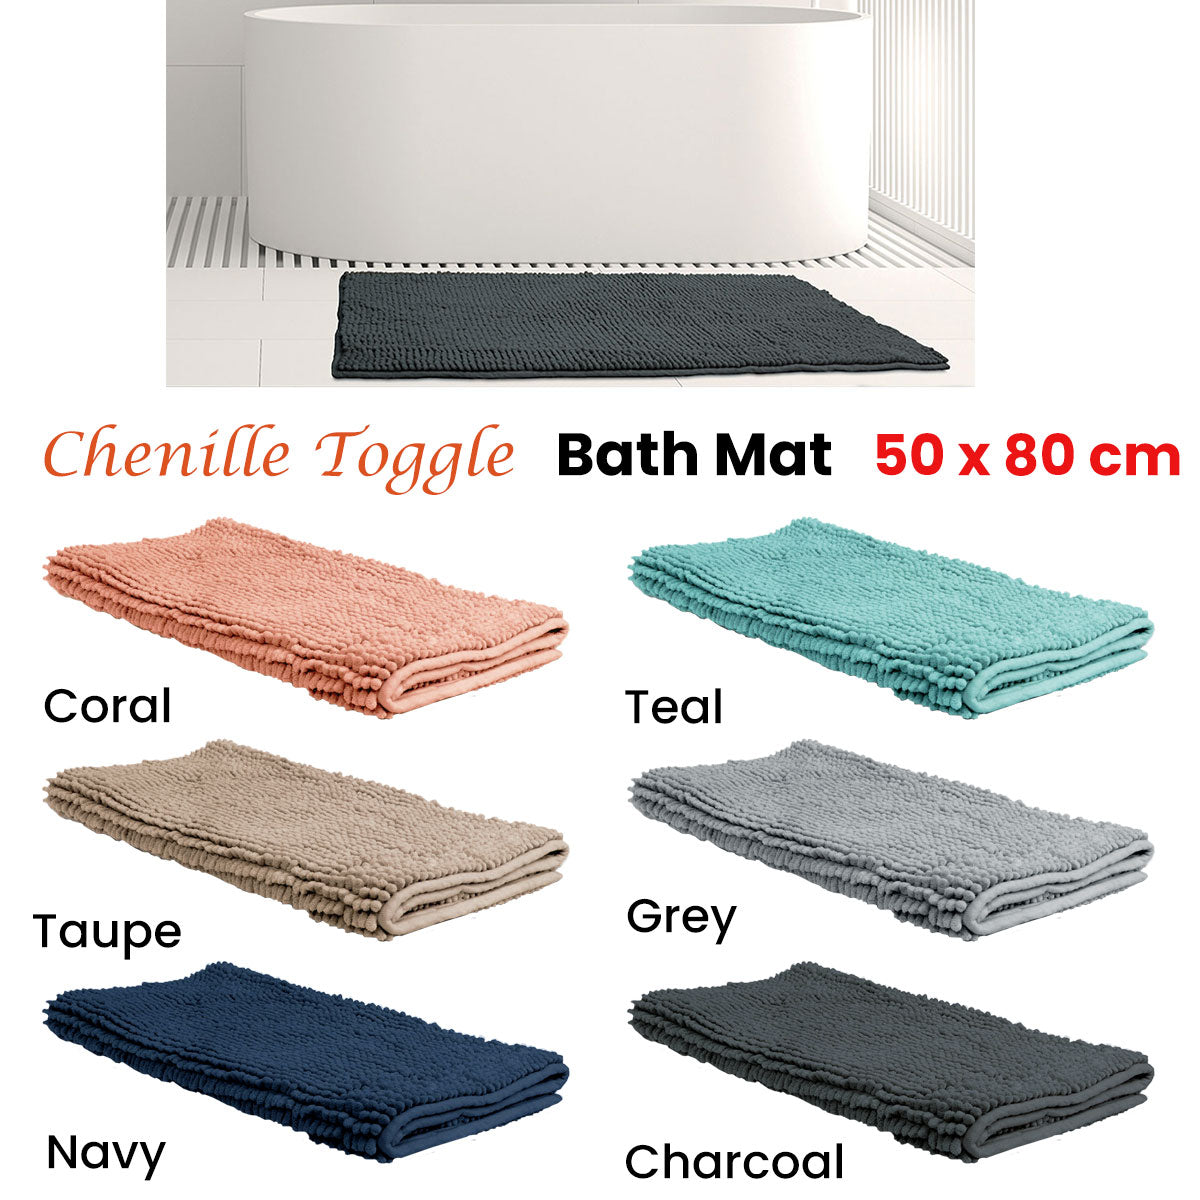 Chenille Toggle Bath Mat 50 x 80cm Grey - Newstart Furniture